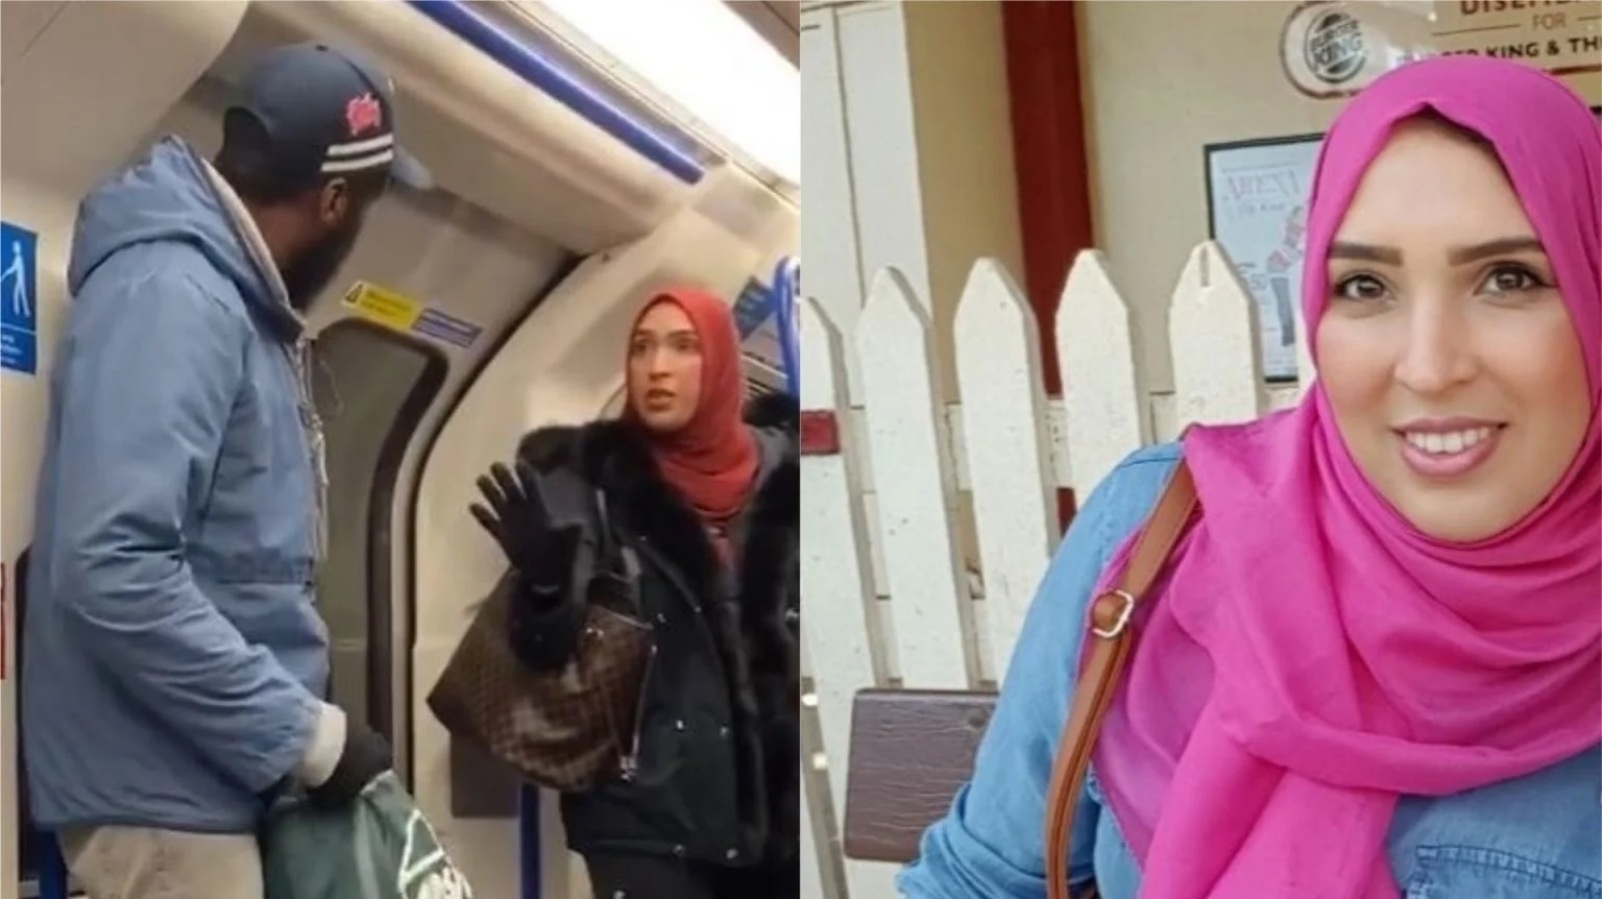  लंदन की ट्रेन में एक यहूदी परिवार के साथ हो रहे धार्मिक दुर्व्यवहार को रोकने वाली मुस्लिम महिला असमा शेख की दुनिया में हो रही है तारीफ ।